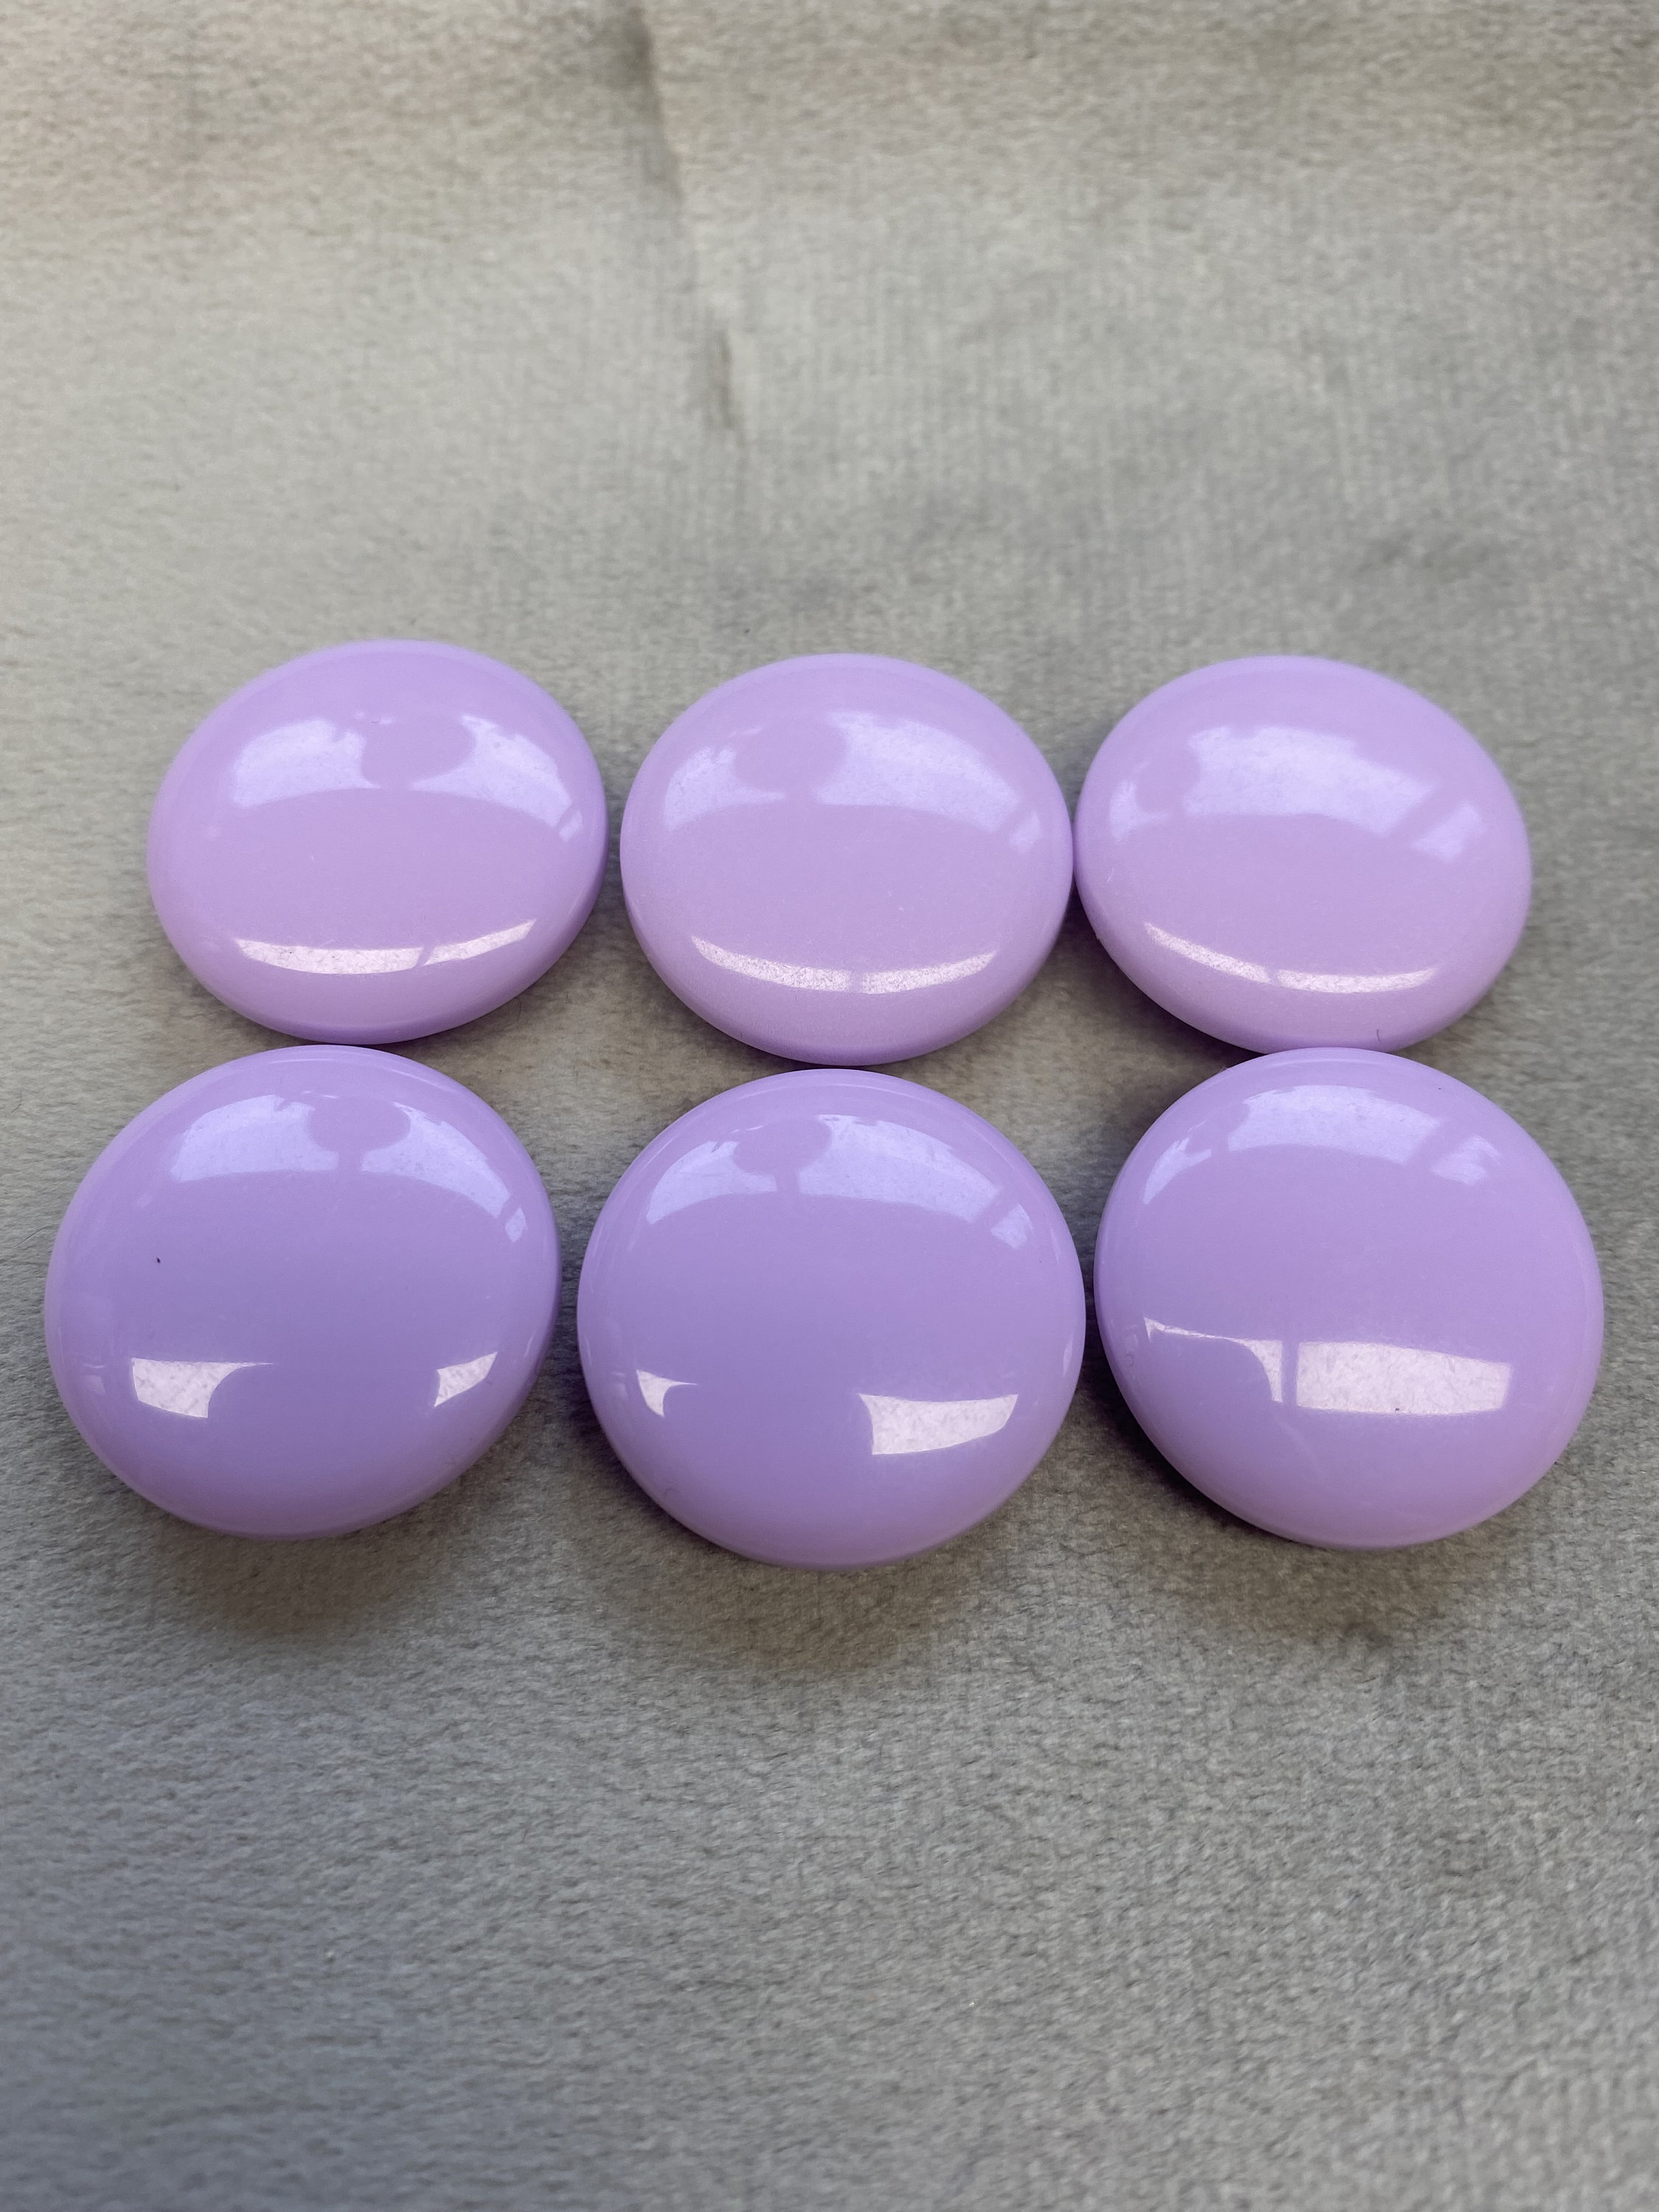 Botones joya lila con respaldo laminado 18 mm un juego de 6